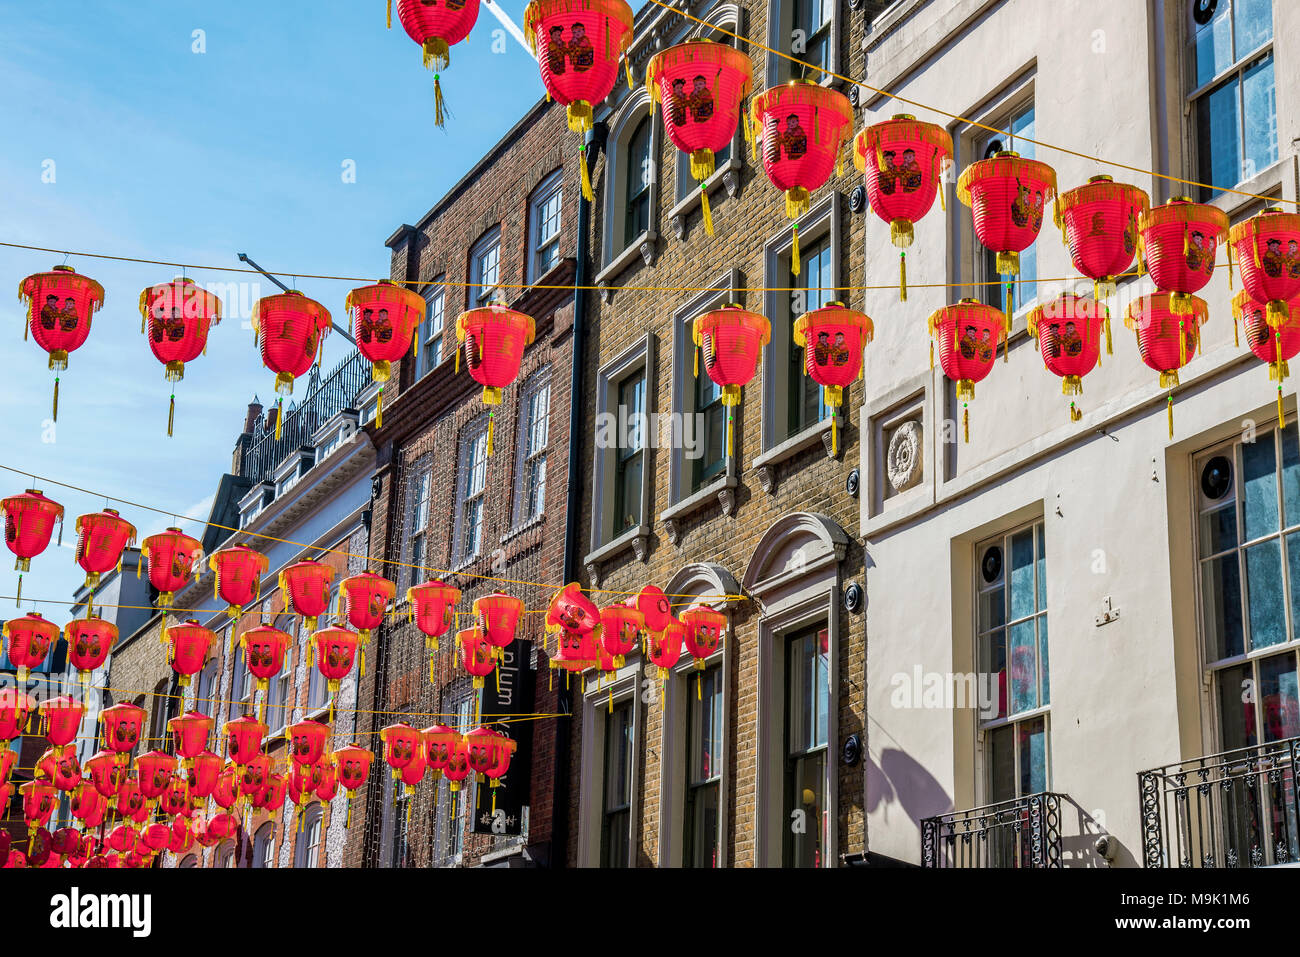 Londres, Royaume-Uni - 21 mars : les décorations du Nouvel An chinois et de l'architecture sur Gerrard Street dans le quartier chinois le 21 mars 2018 à Londres Banque D'Images